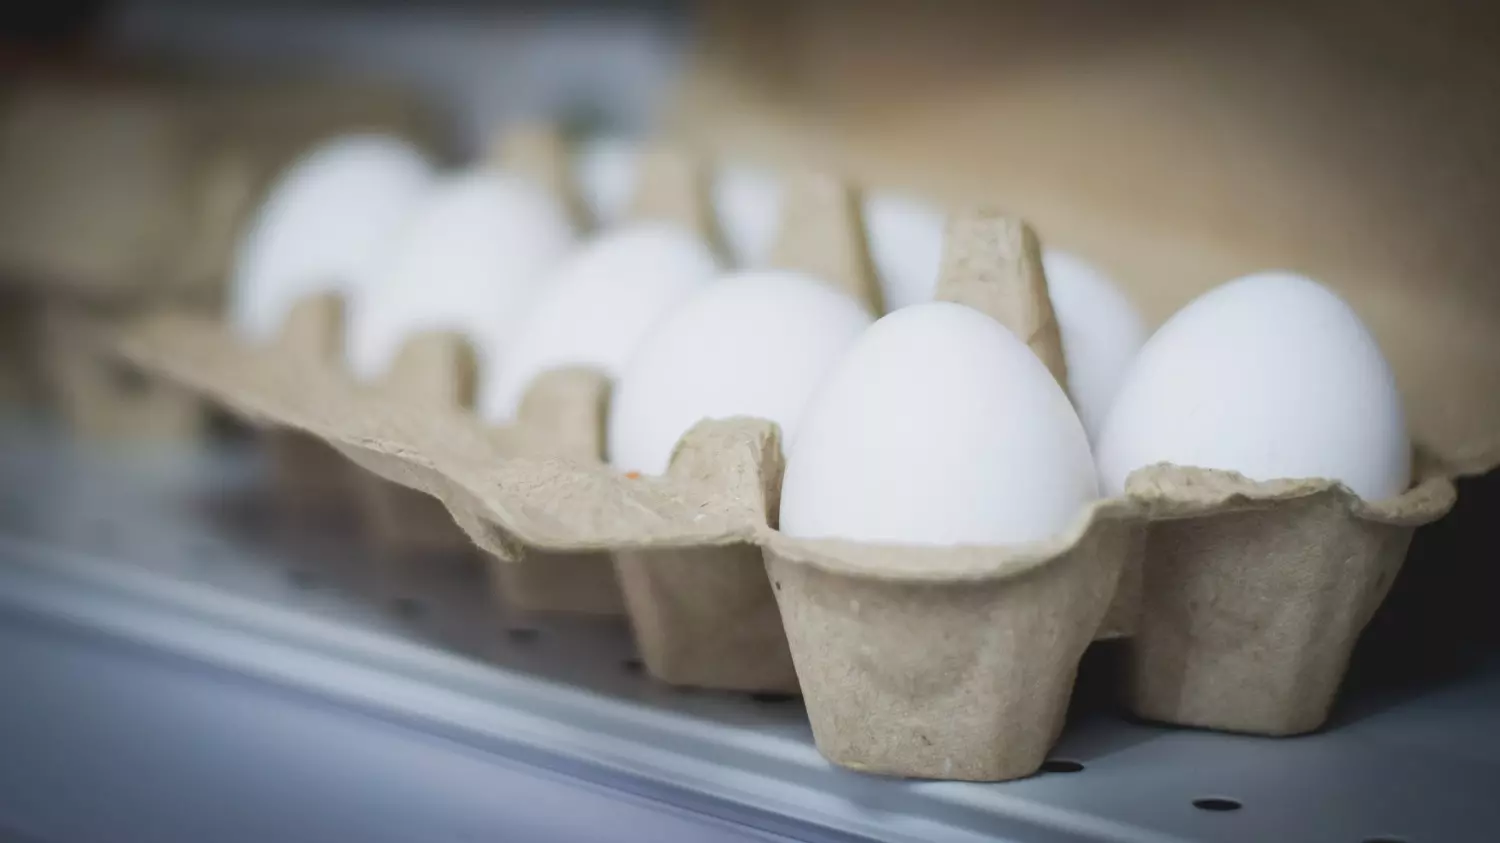 Громадные ценники на яйца стали темой №1 в федеральной повестке